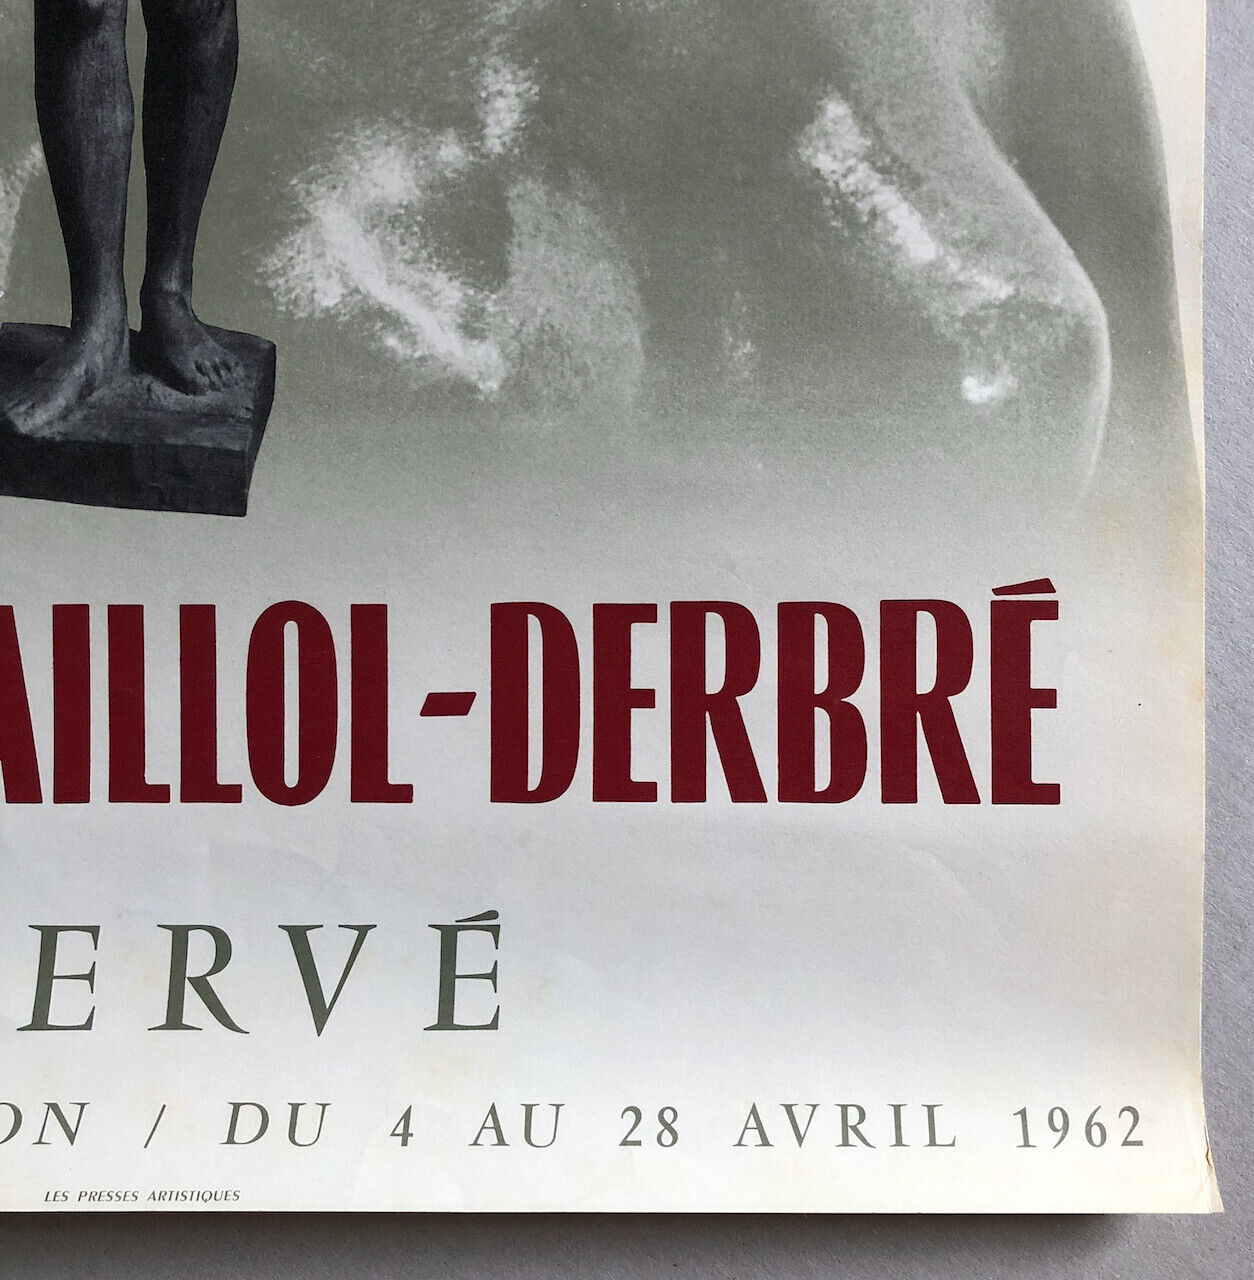 Rodin-Maillol-Derbré — affiche d'exposition à la galerie Hervé — 64 x 40 — 1962.